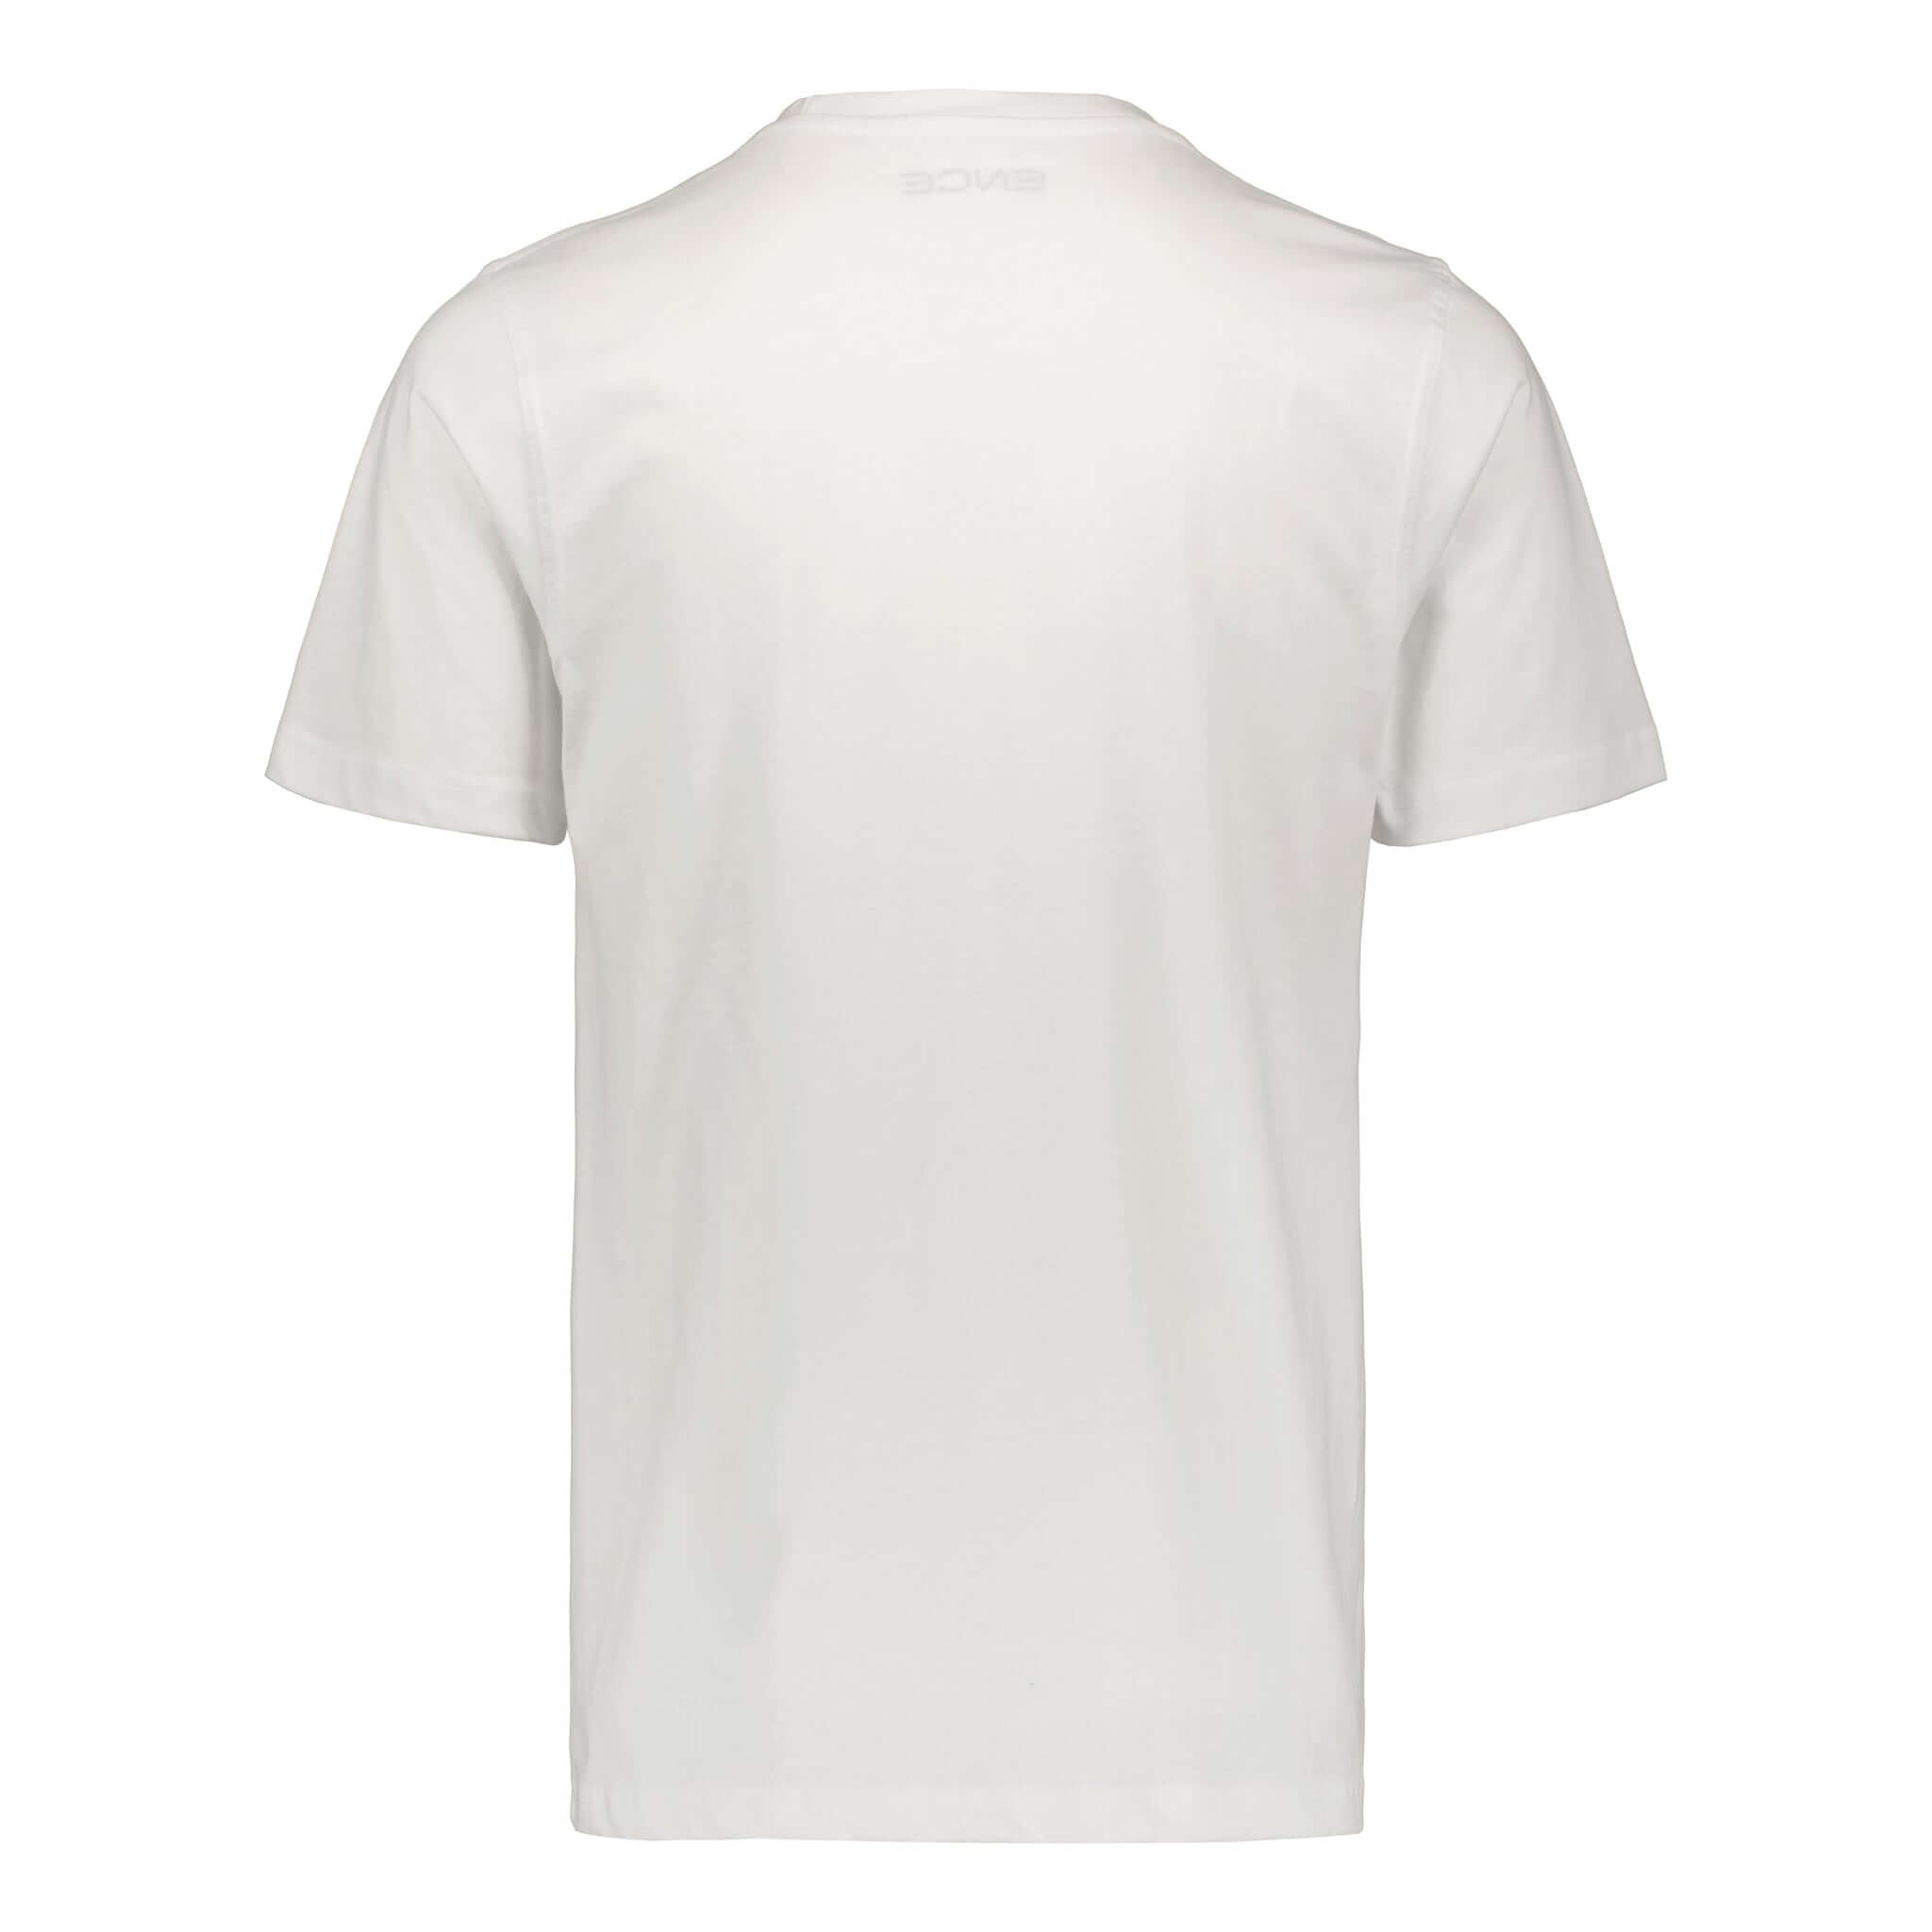 ENCE Square White T-Shirt